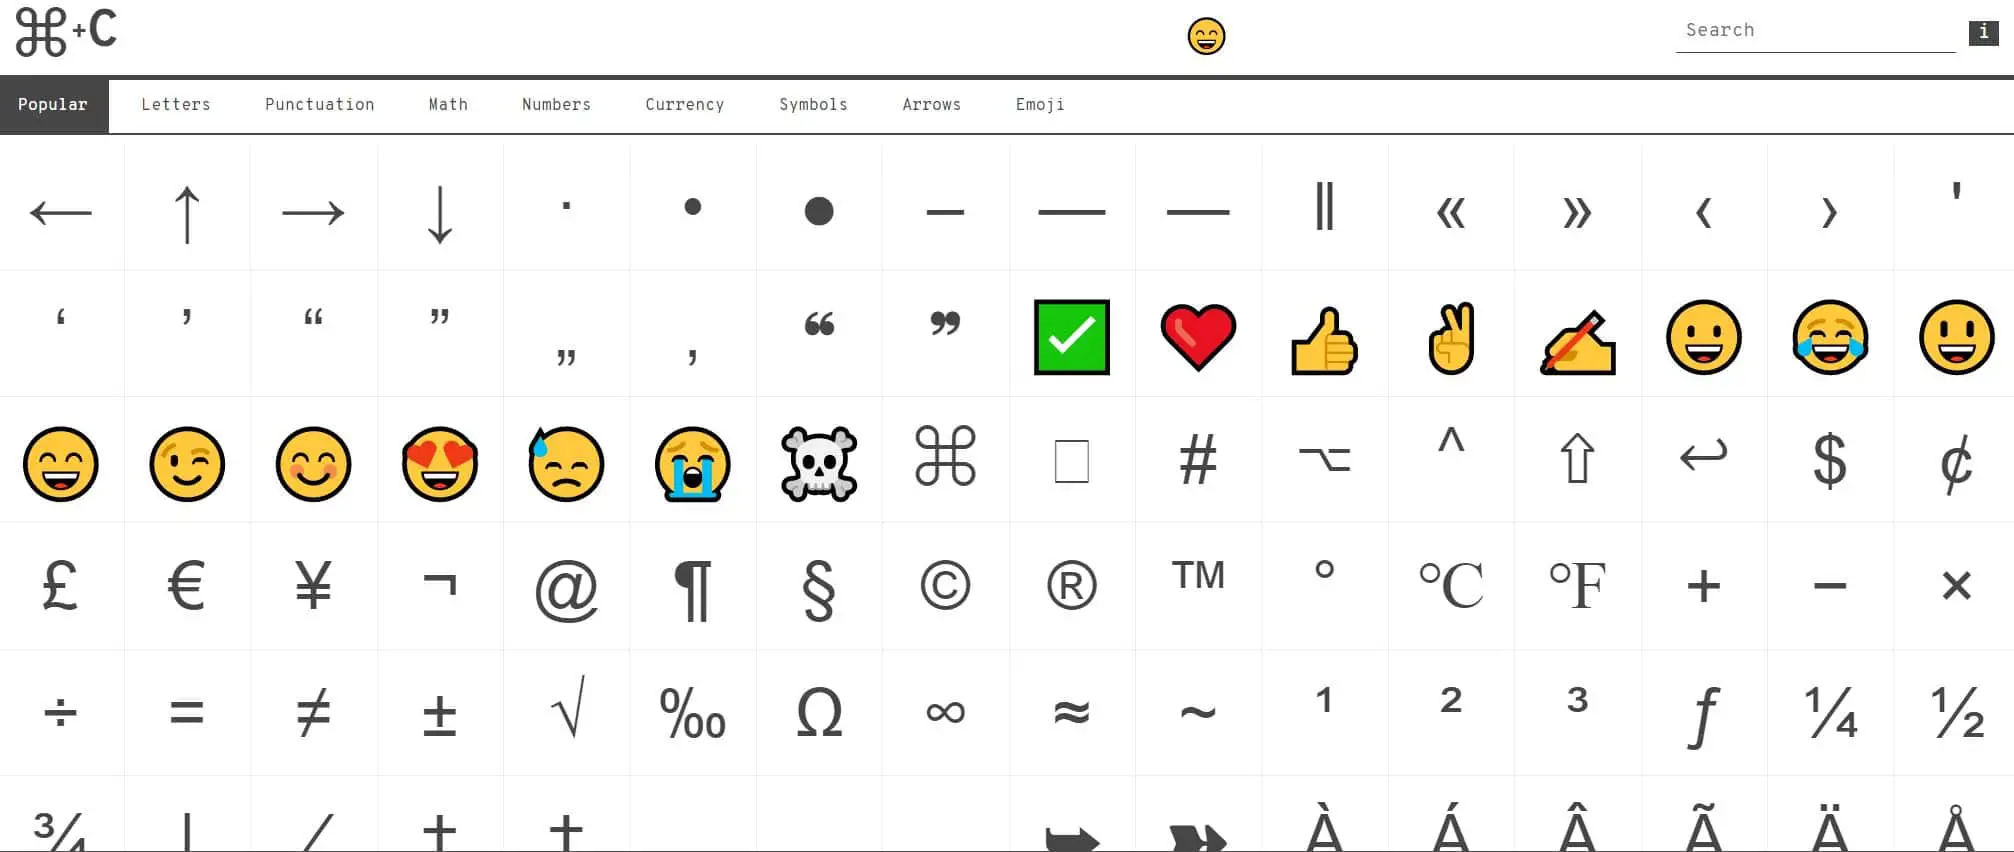 How to Activate Hidden Emoji Keyboard in Windows 10